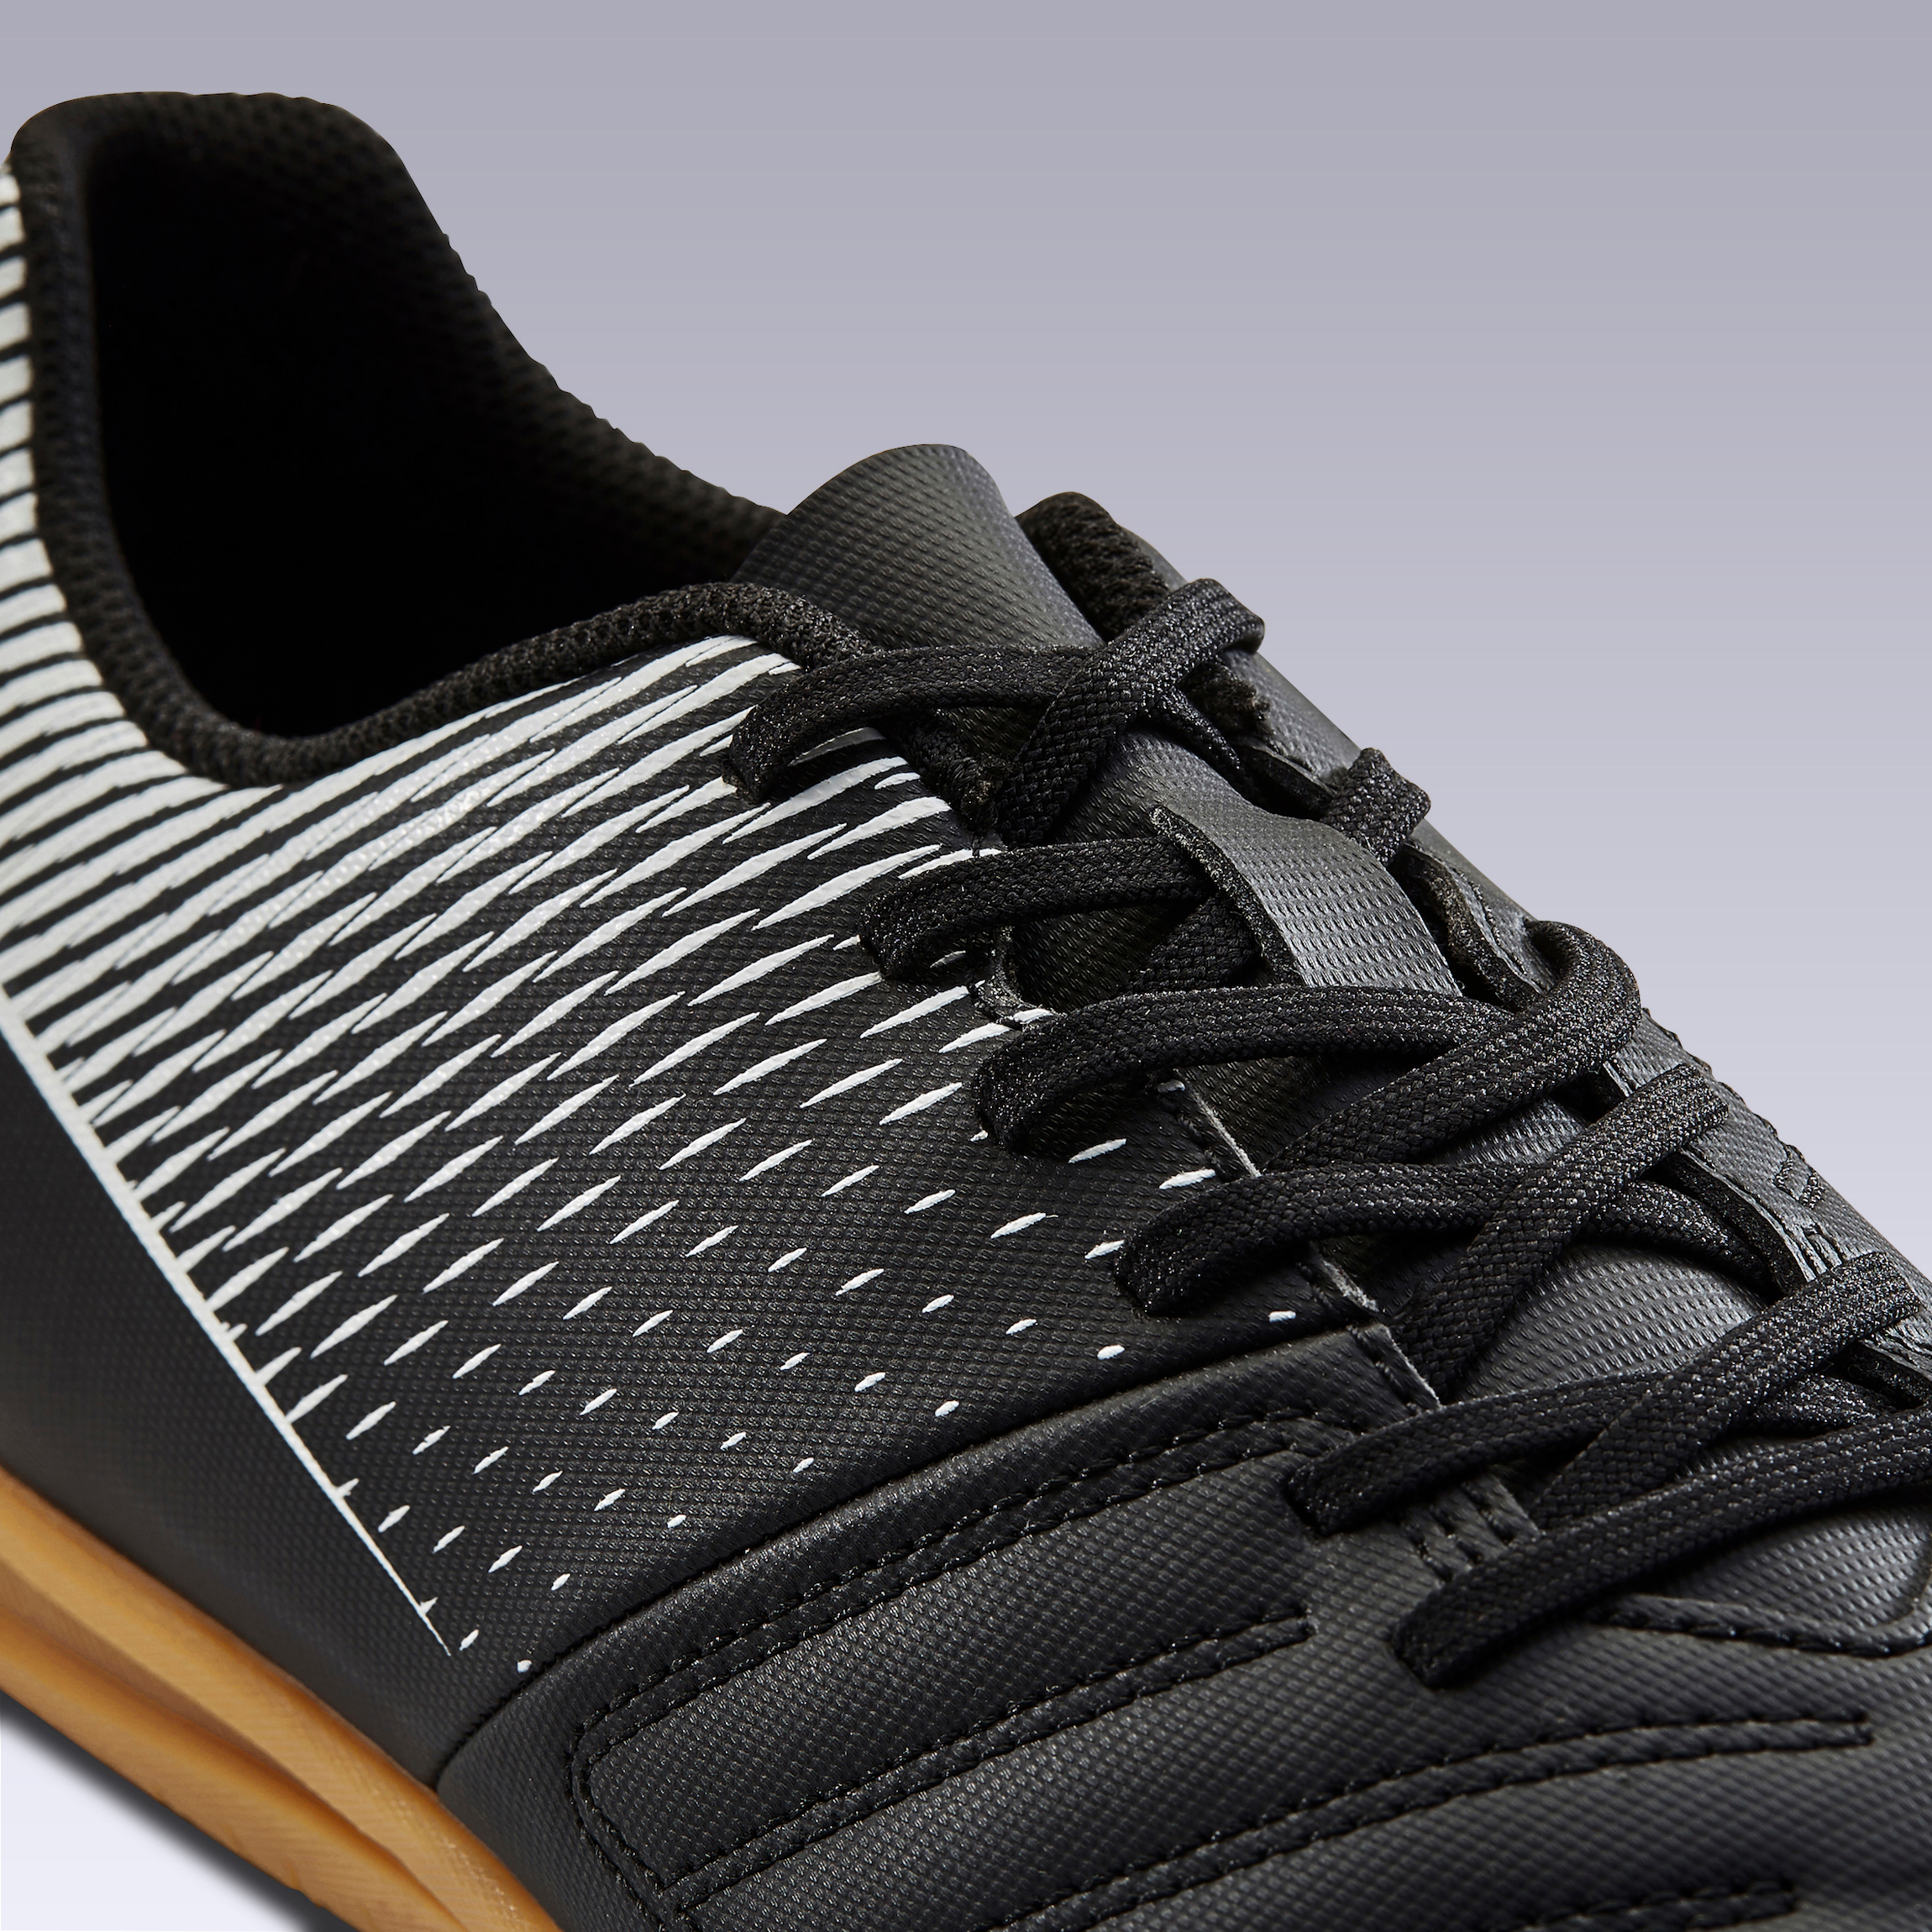 Chaussures de Futsal adulte 100 noir pour les clubs et